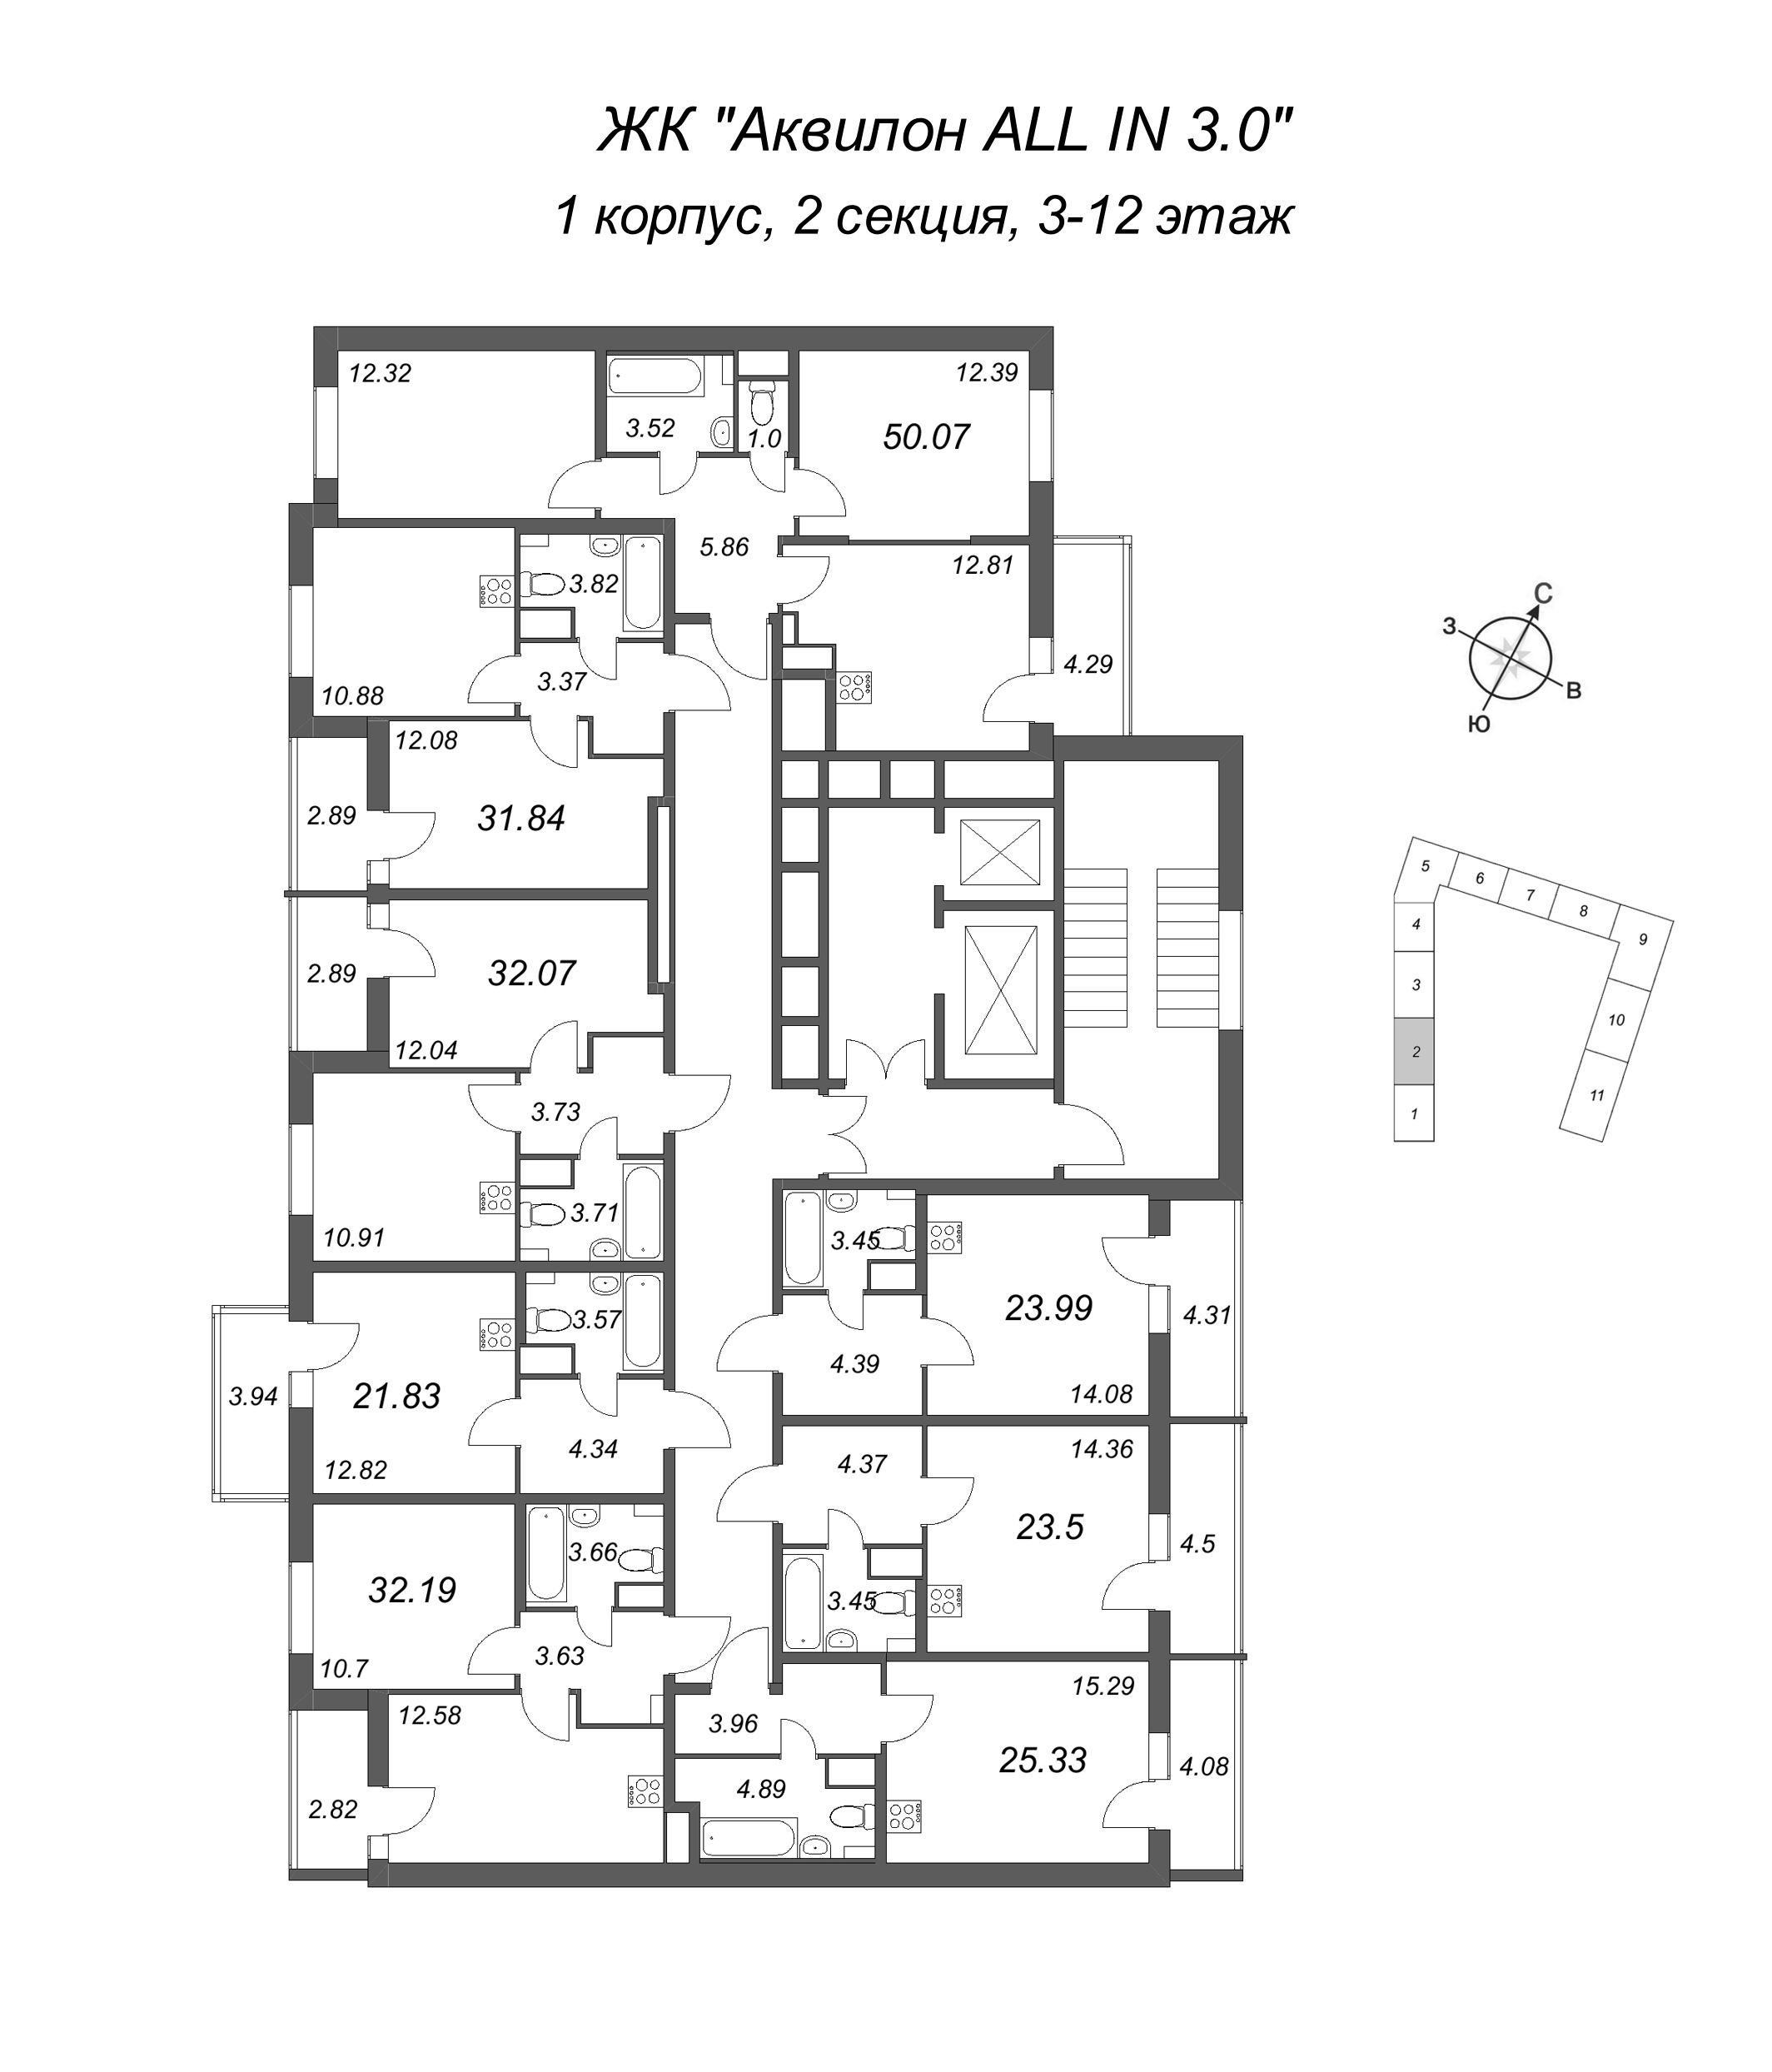 1-комнатная квартира, 32.07 м² в ЖК "Аквилон All in 3.0" - планировка этажа